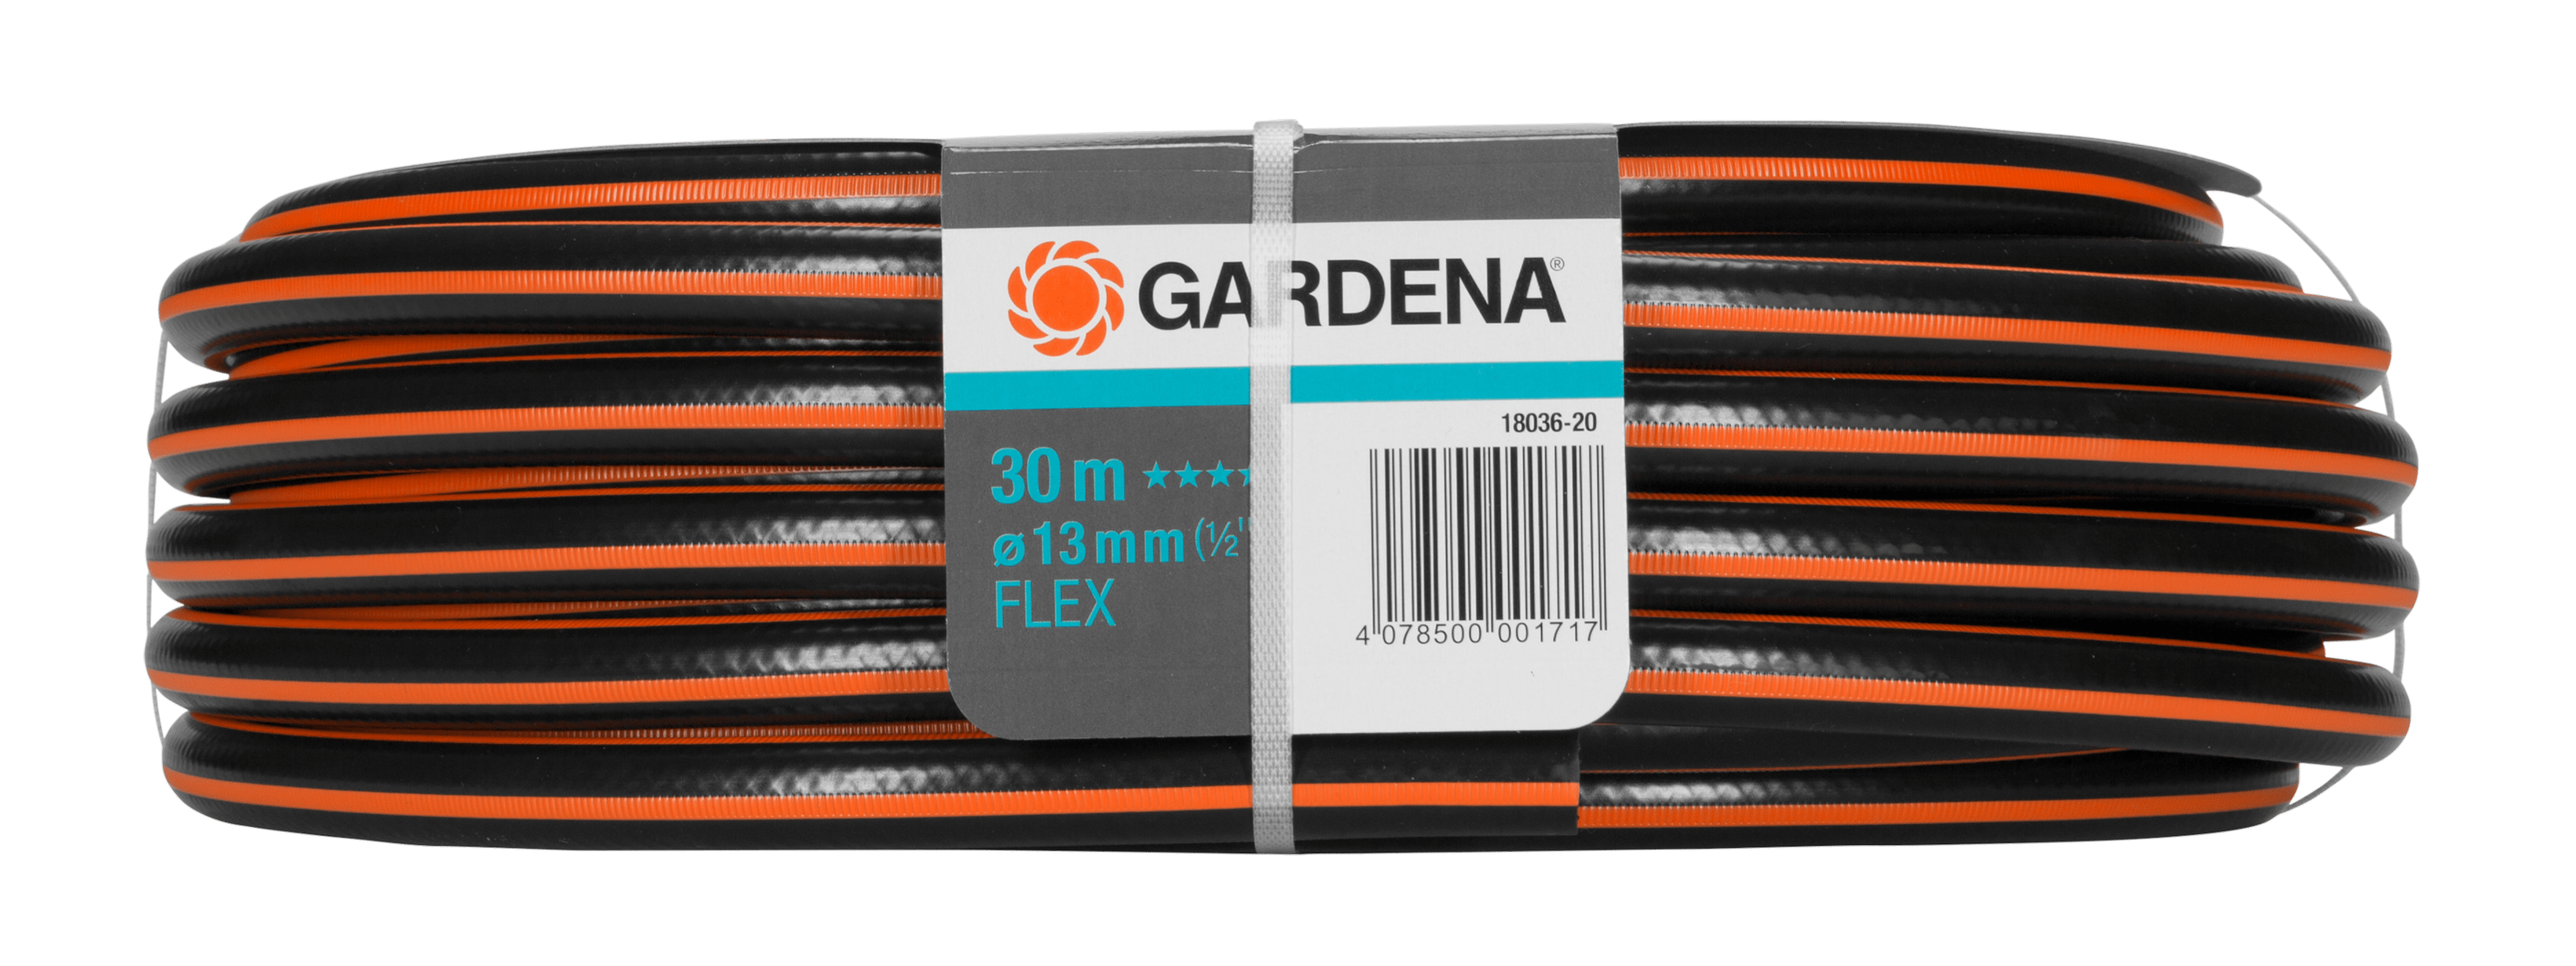 Gardena Comfort Flex Schlauch 9x9 13mm 1/2" 30m